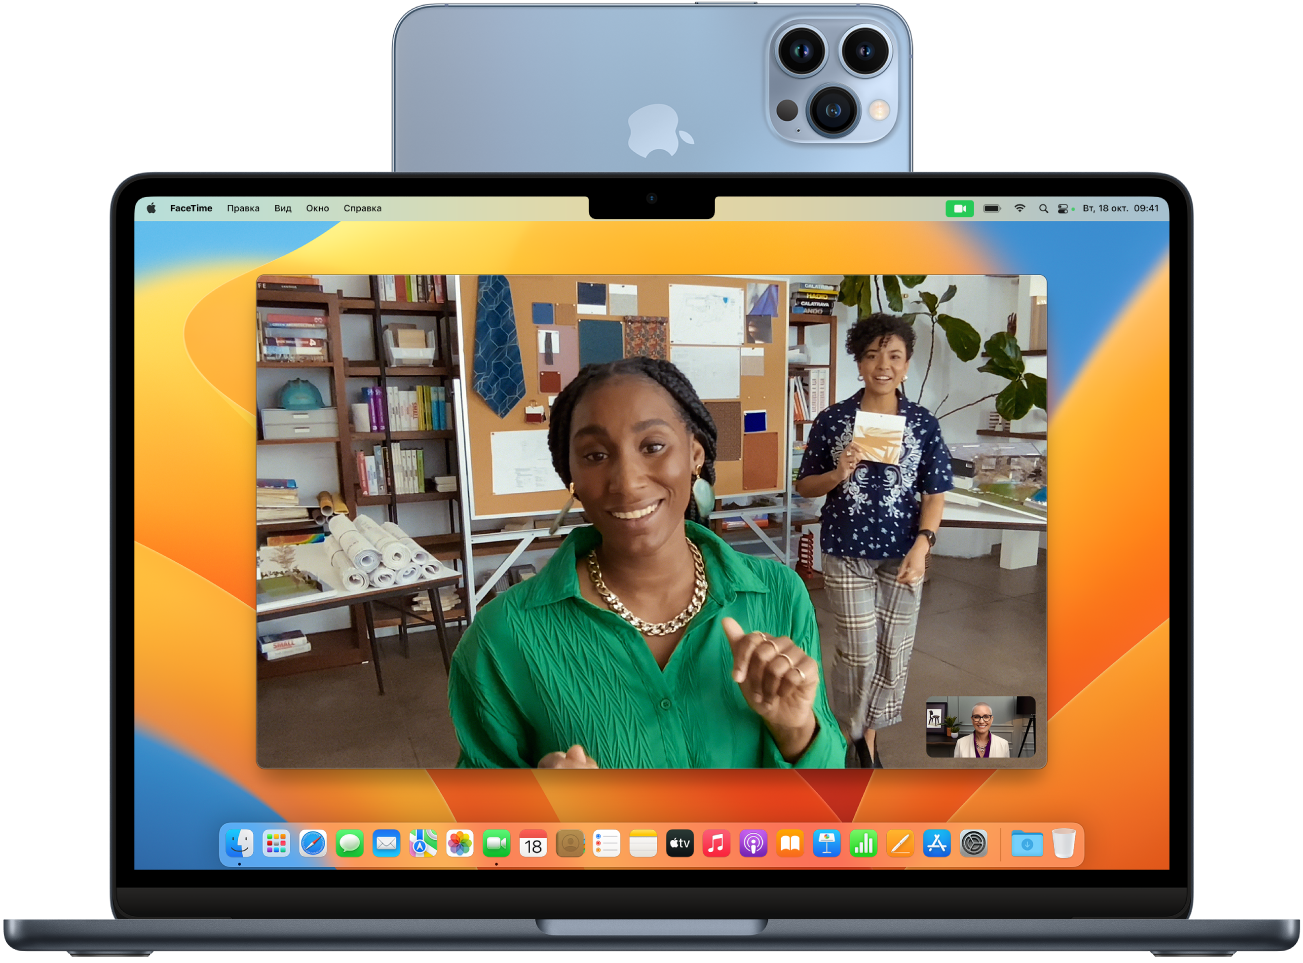 Компьютер Mac. К верхней части дисплея прикреплен iPhone, который используется в качестве веб-камеры. Изображение с камеры iPhone выведено на дисплей Mac.